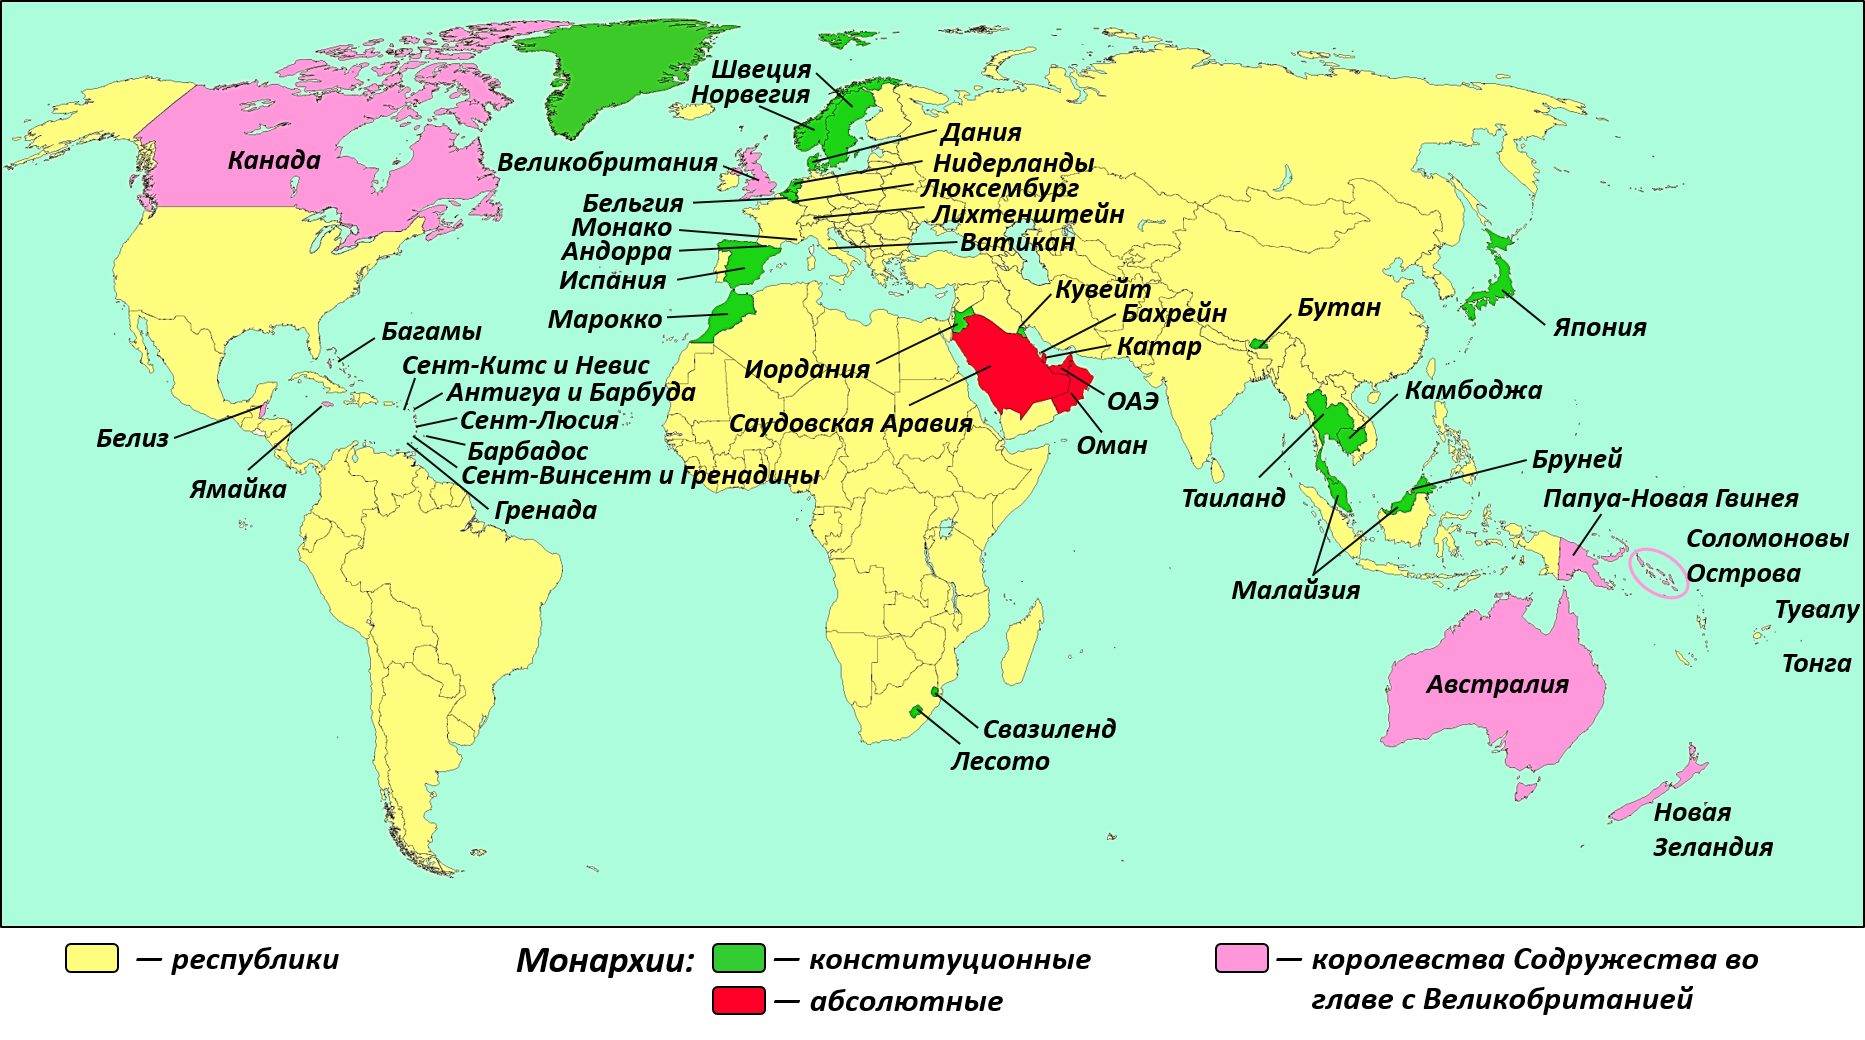 Страны с конституционной монархией на карте. Государства с республиканской формой правления Европы на карте.